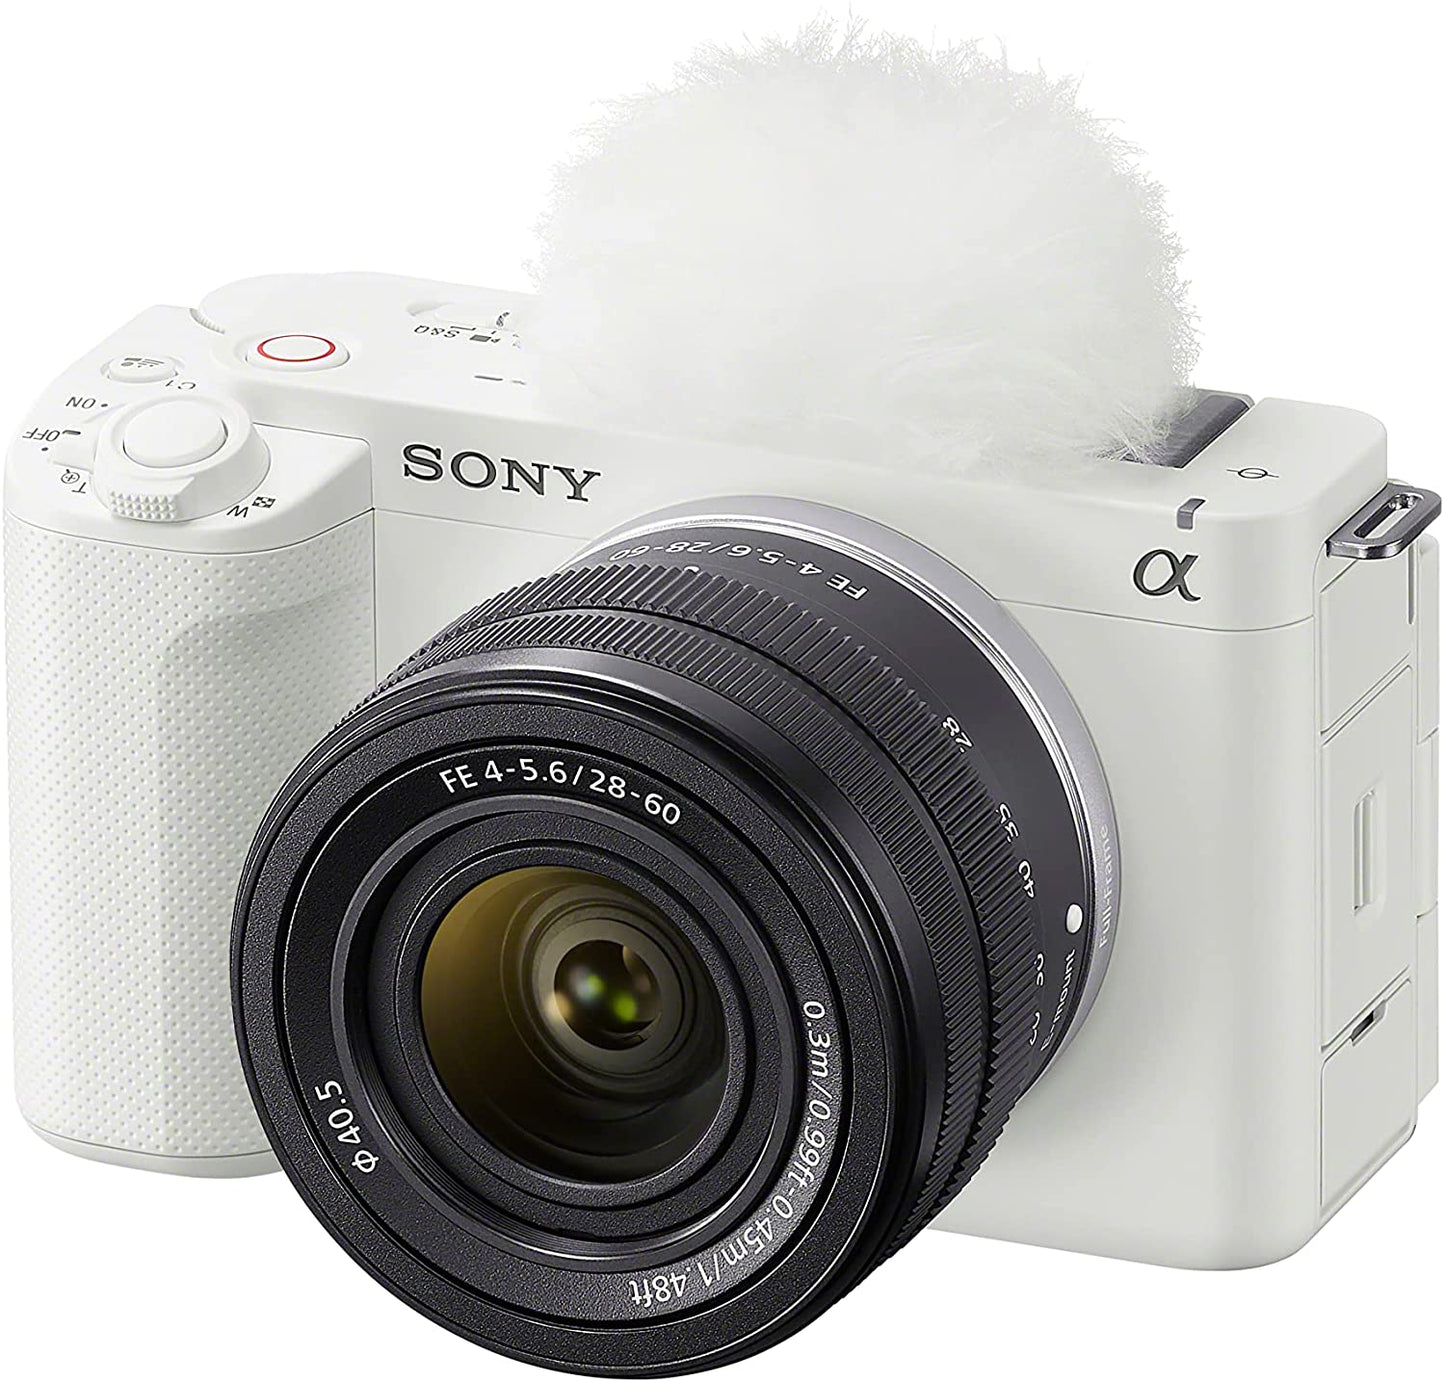 Sony Alpha ZV-E1 Full-Frame Vlog Camera with 28-60mm Lens - White